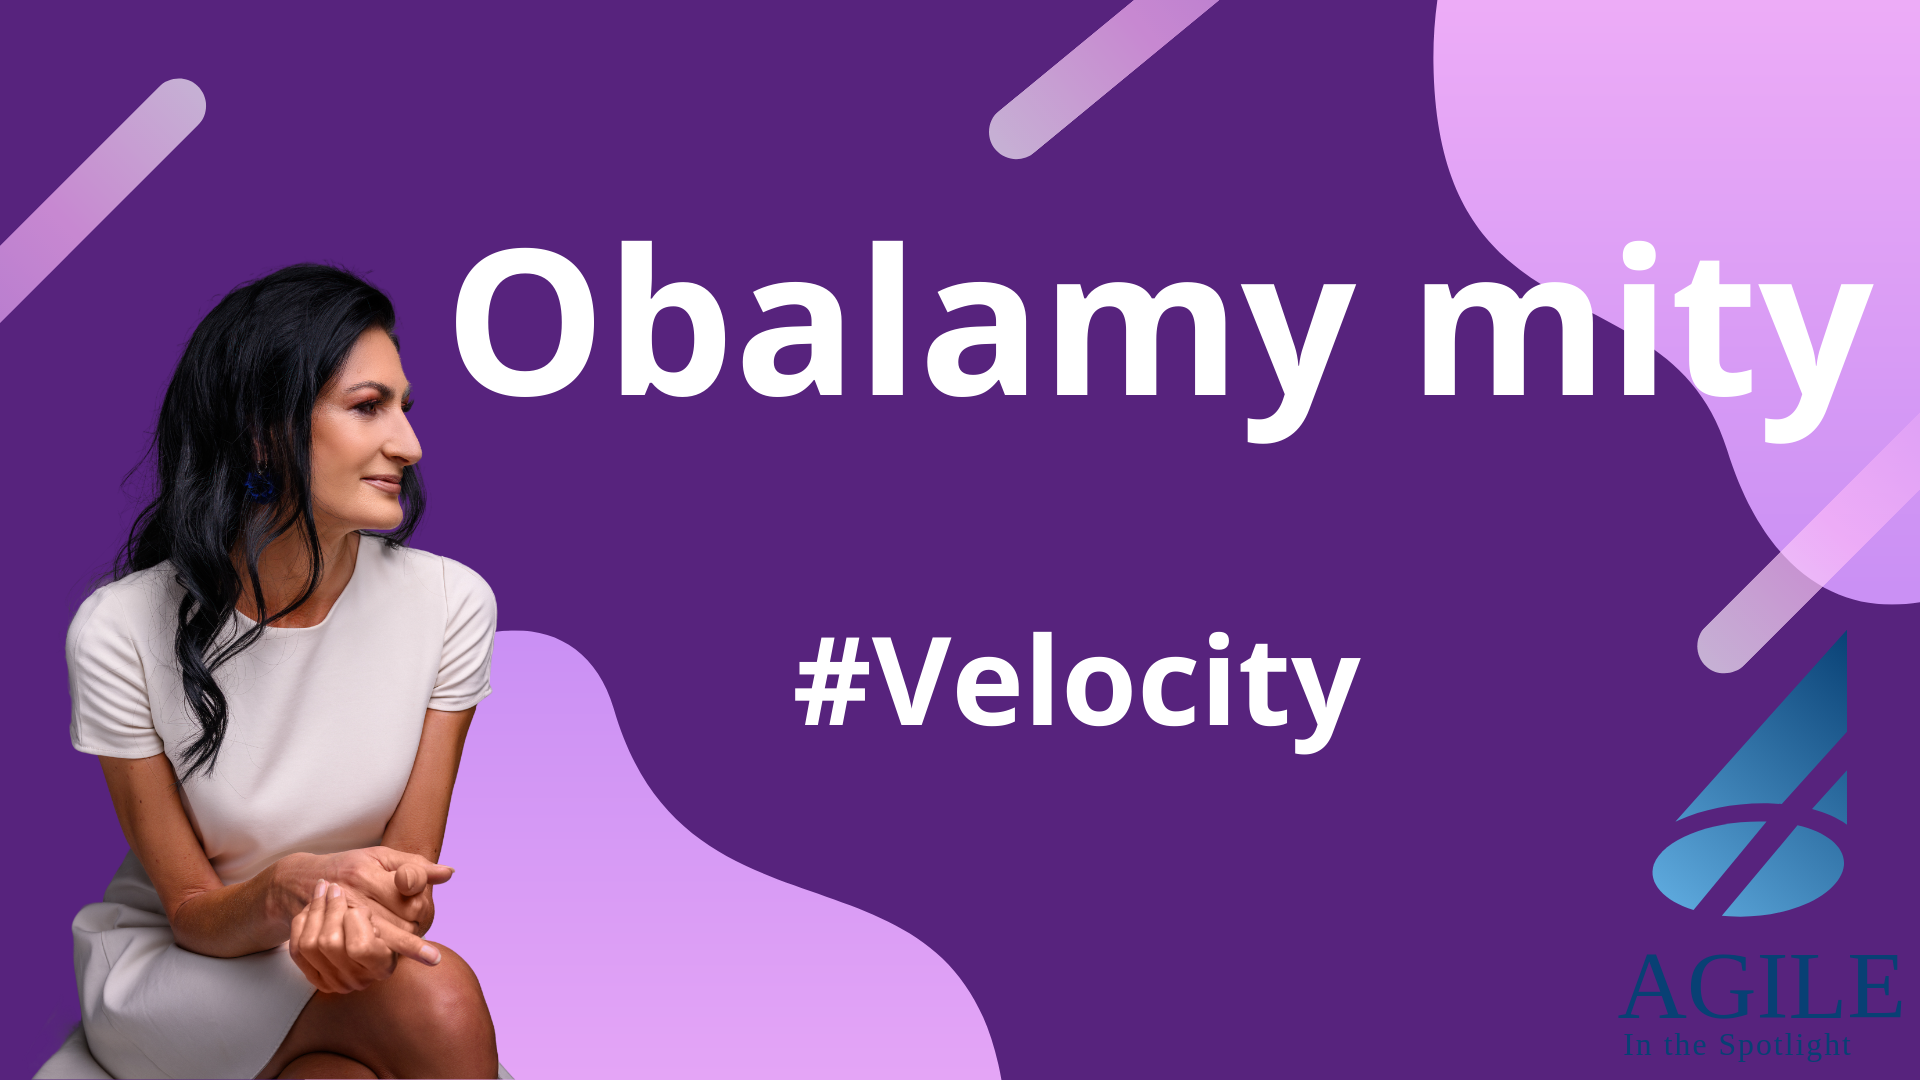 Obalamy mity - Velocity